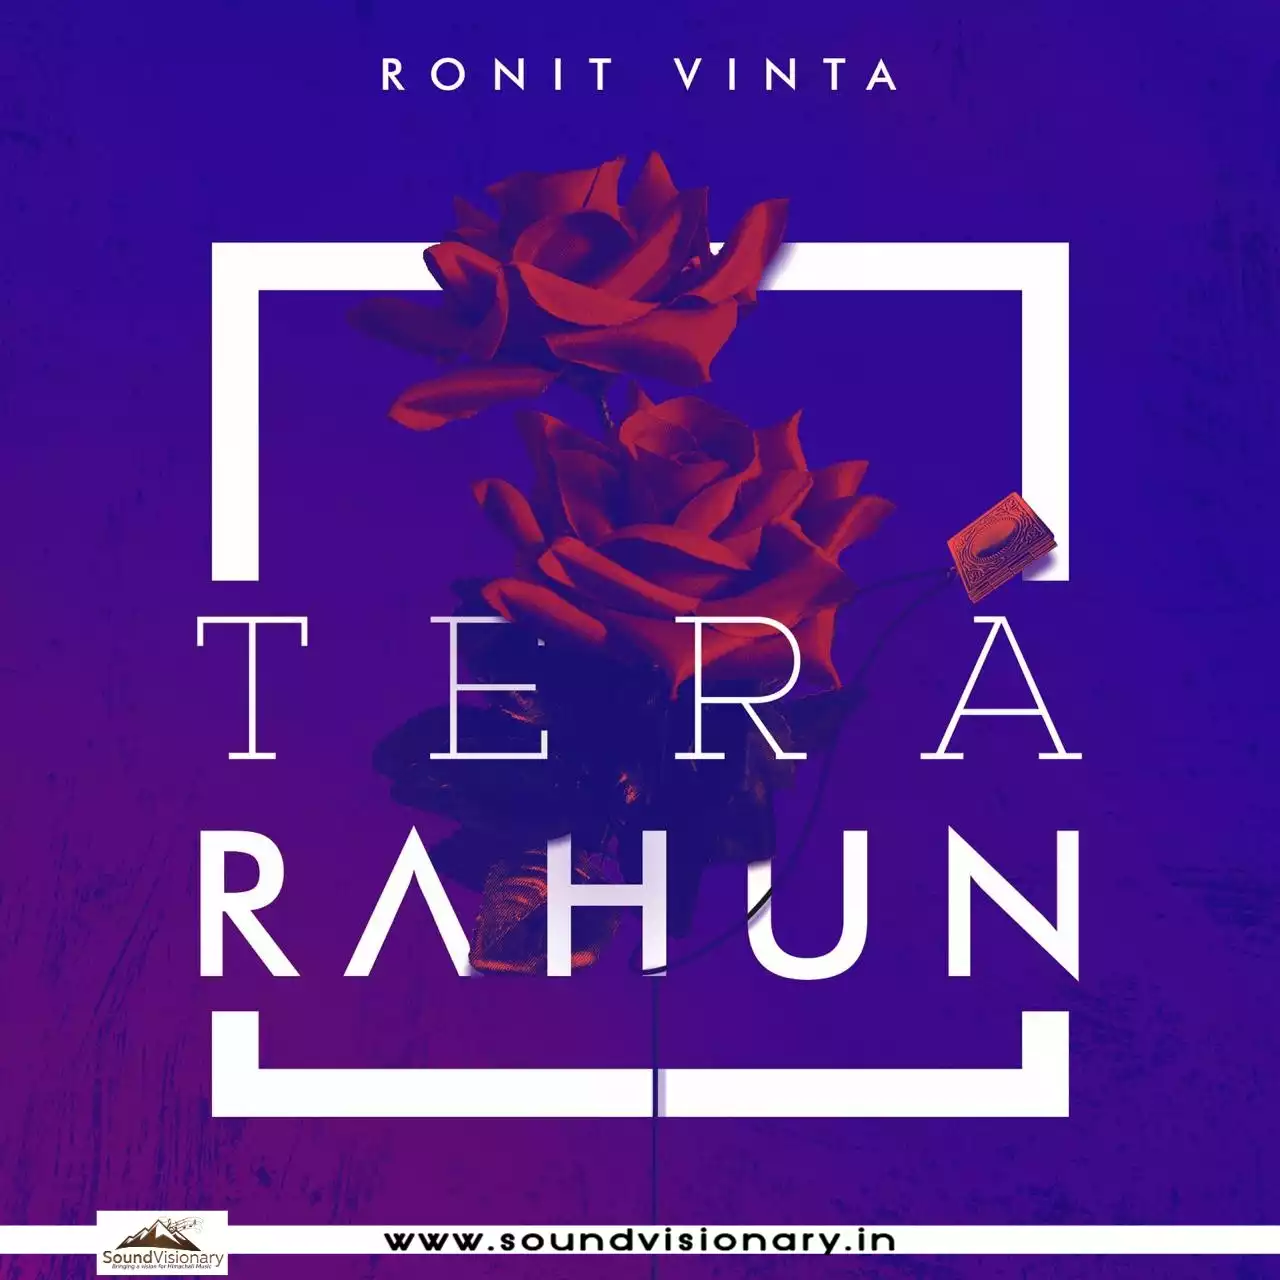 Tera Rahun Song Lyrics by Ronit Vinta on SoundVisionary